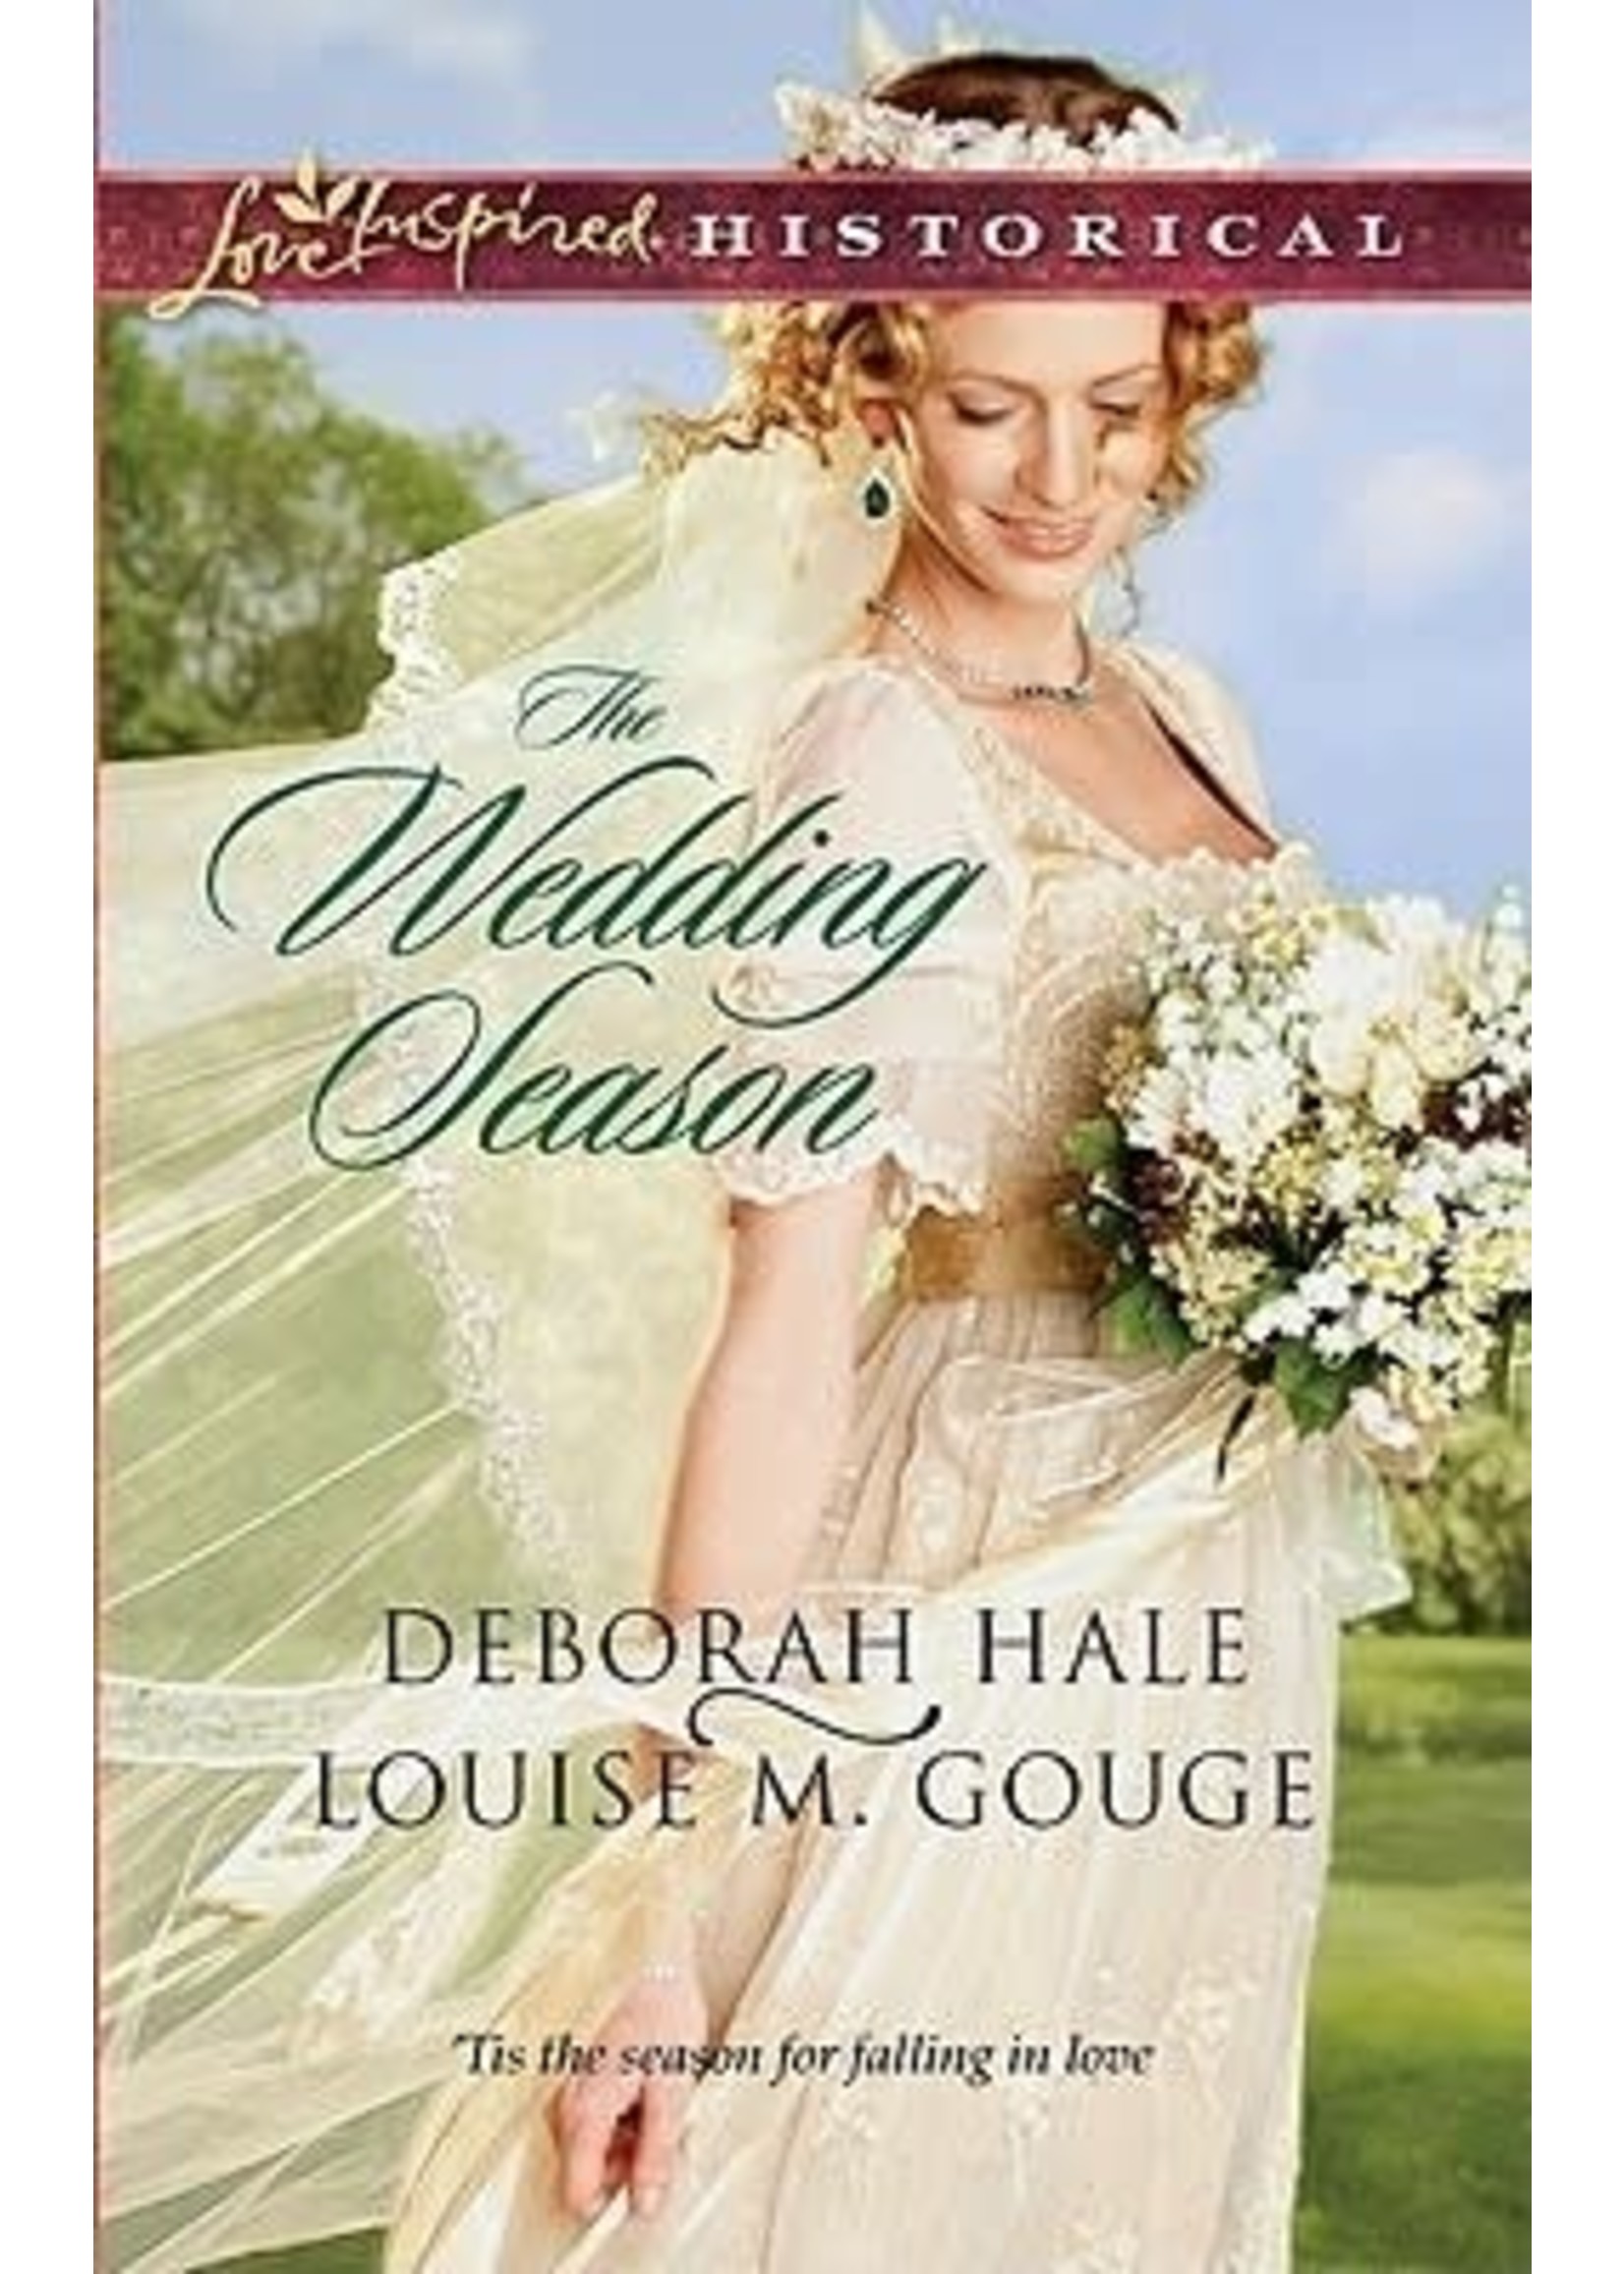 The Wedding Season by Deborah Hale & Louise M. Gouge